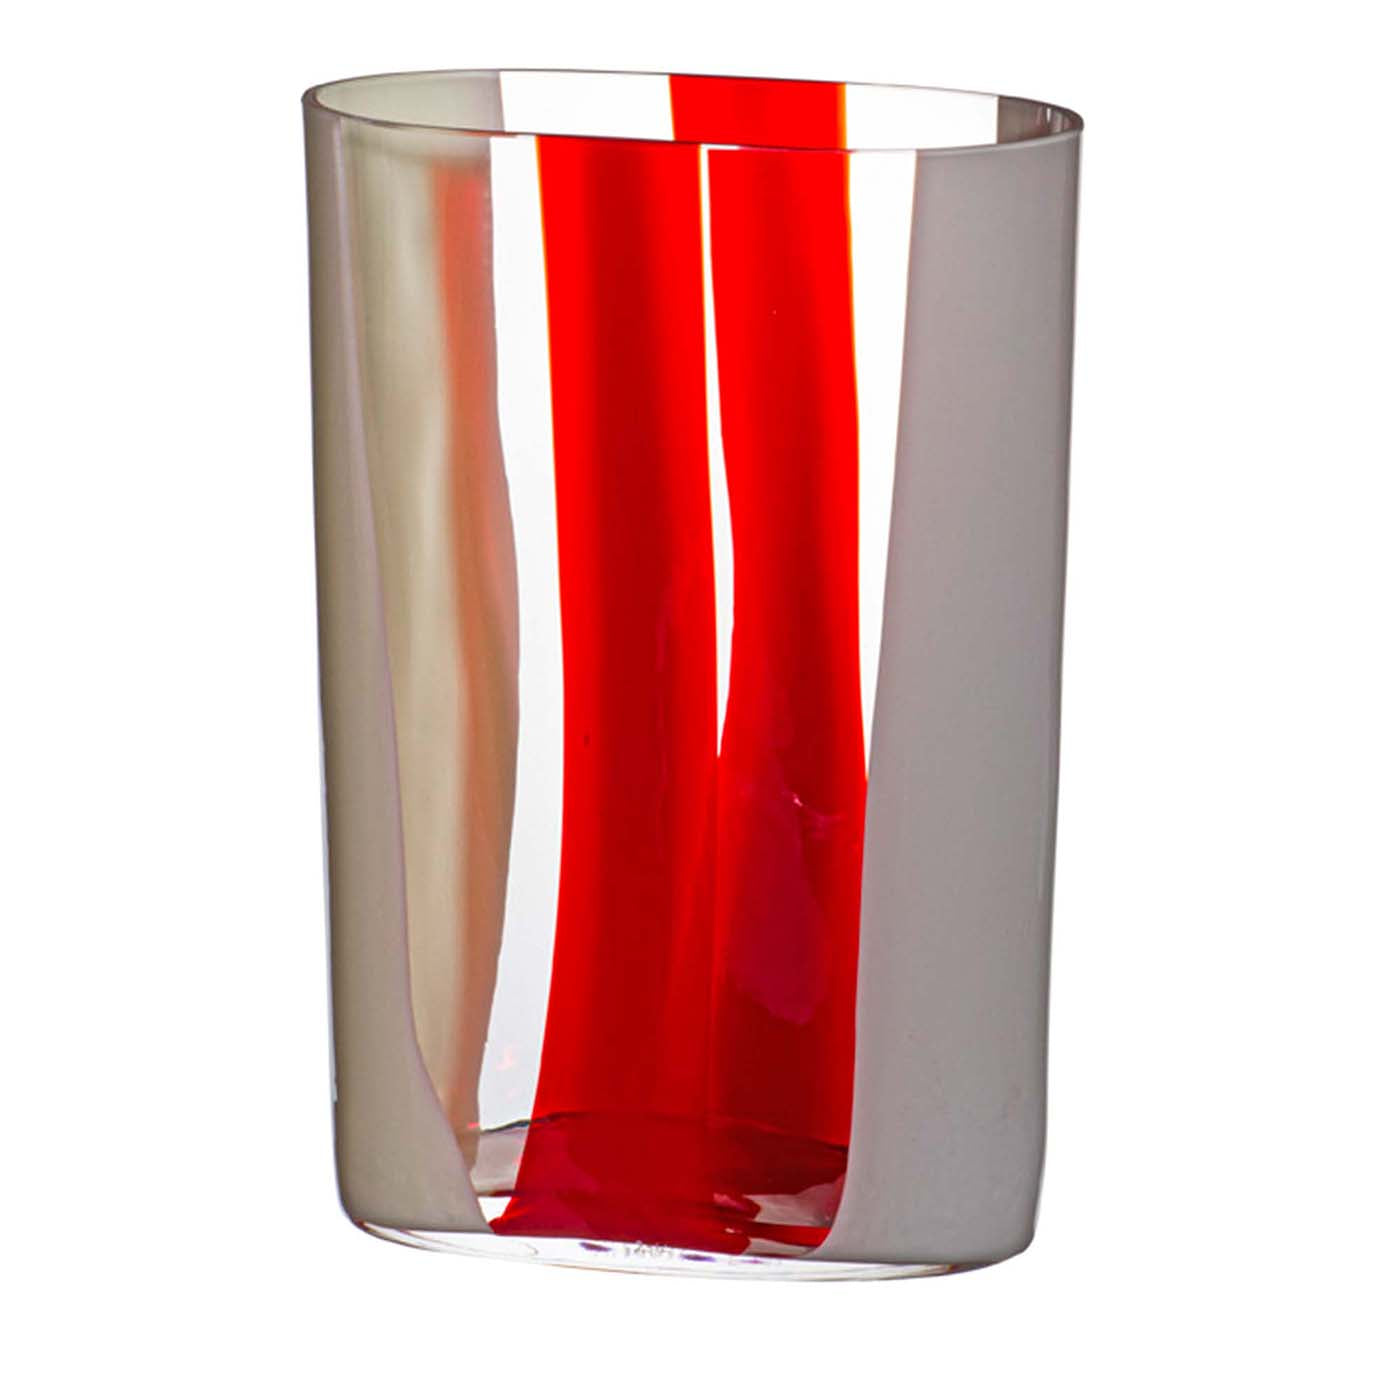 Vaso Ovale a strisce bianche e rosse di Carlo Moretti #1 - Vista principale